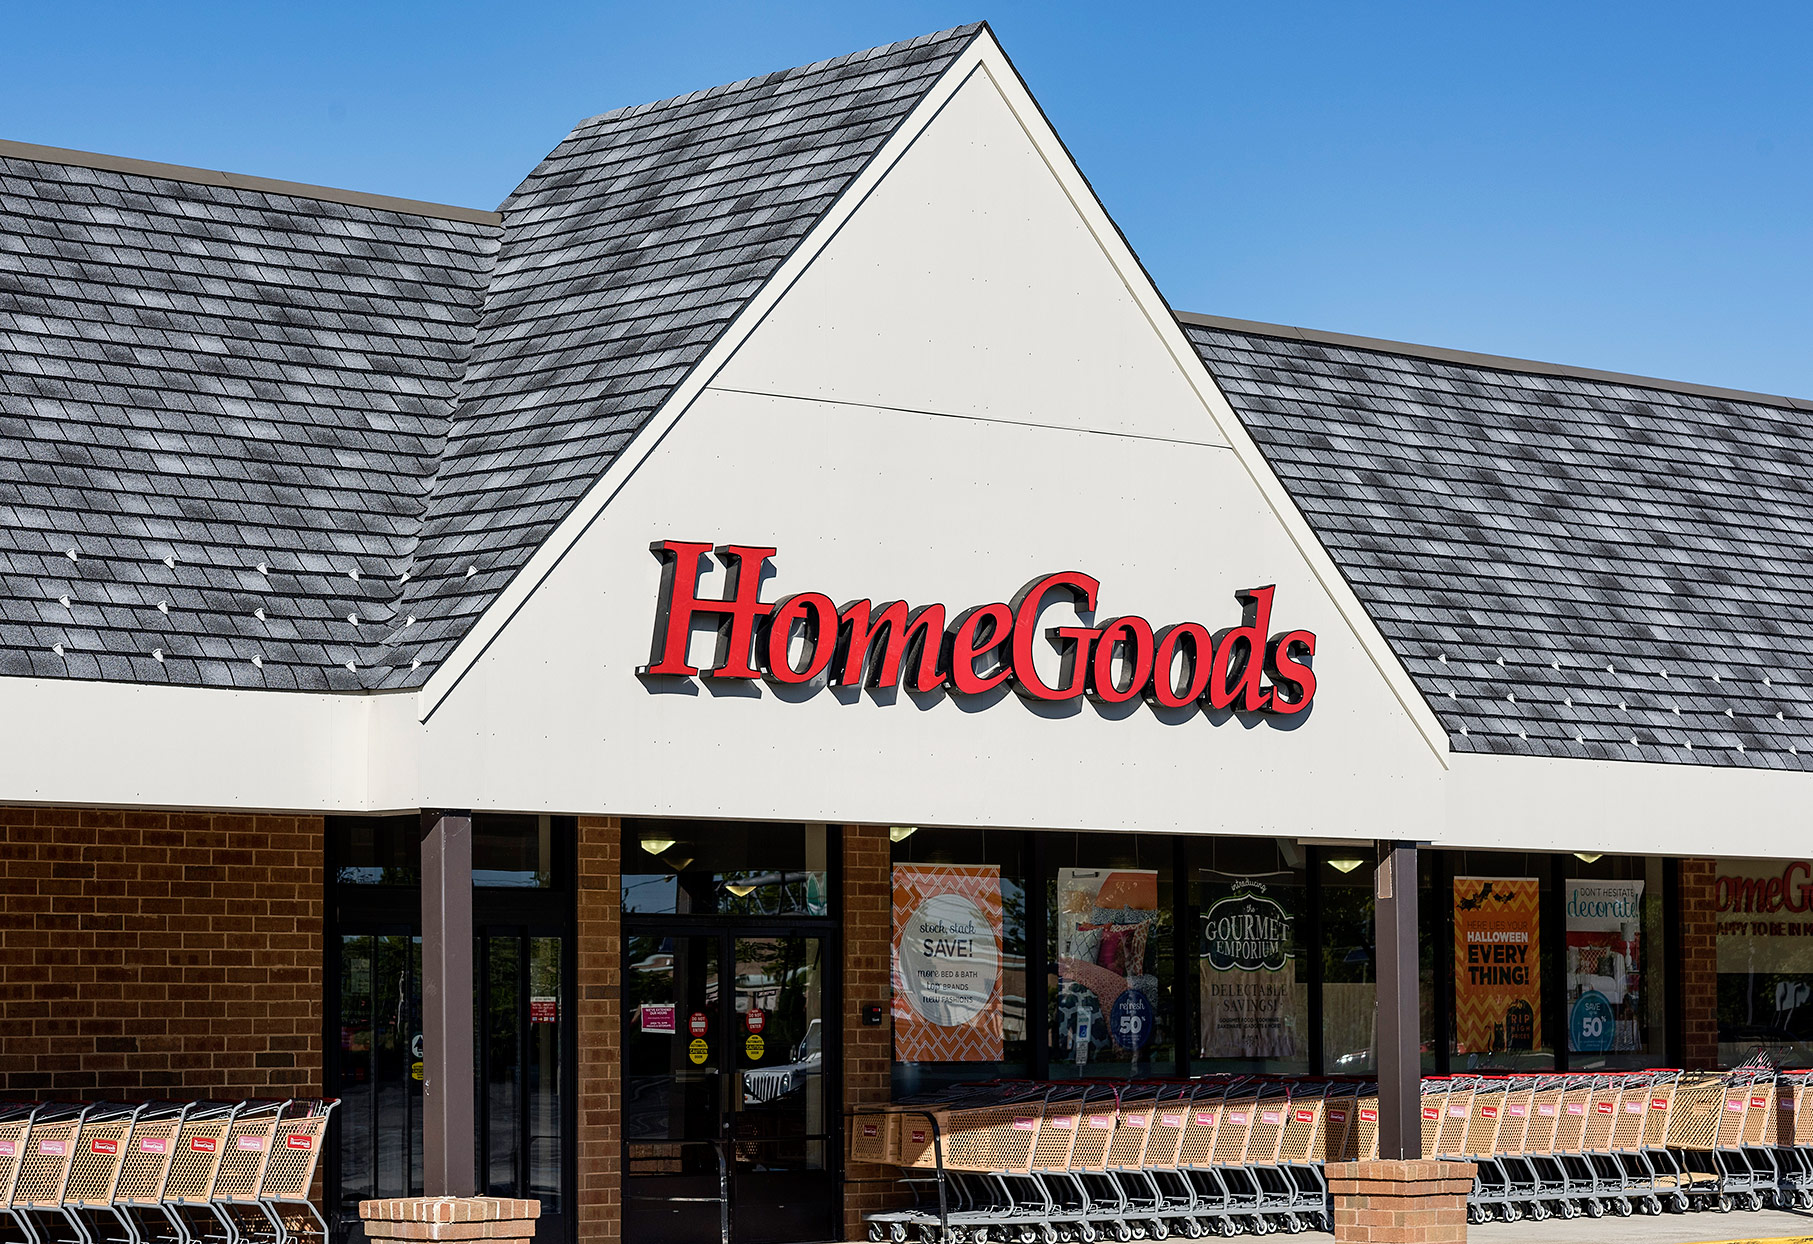 La tienda online de HomeGoods por fin está en marcha y llena de accesorios para el hogar a precios asequibles